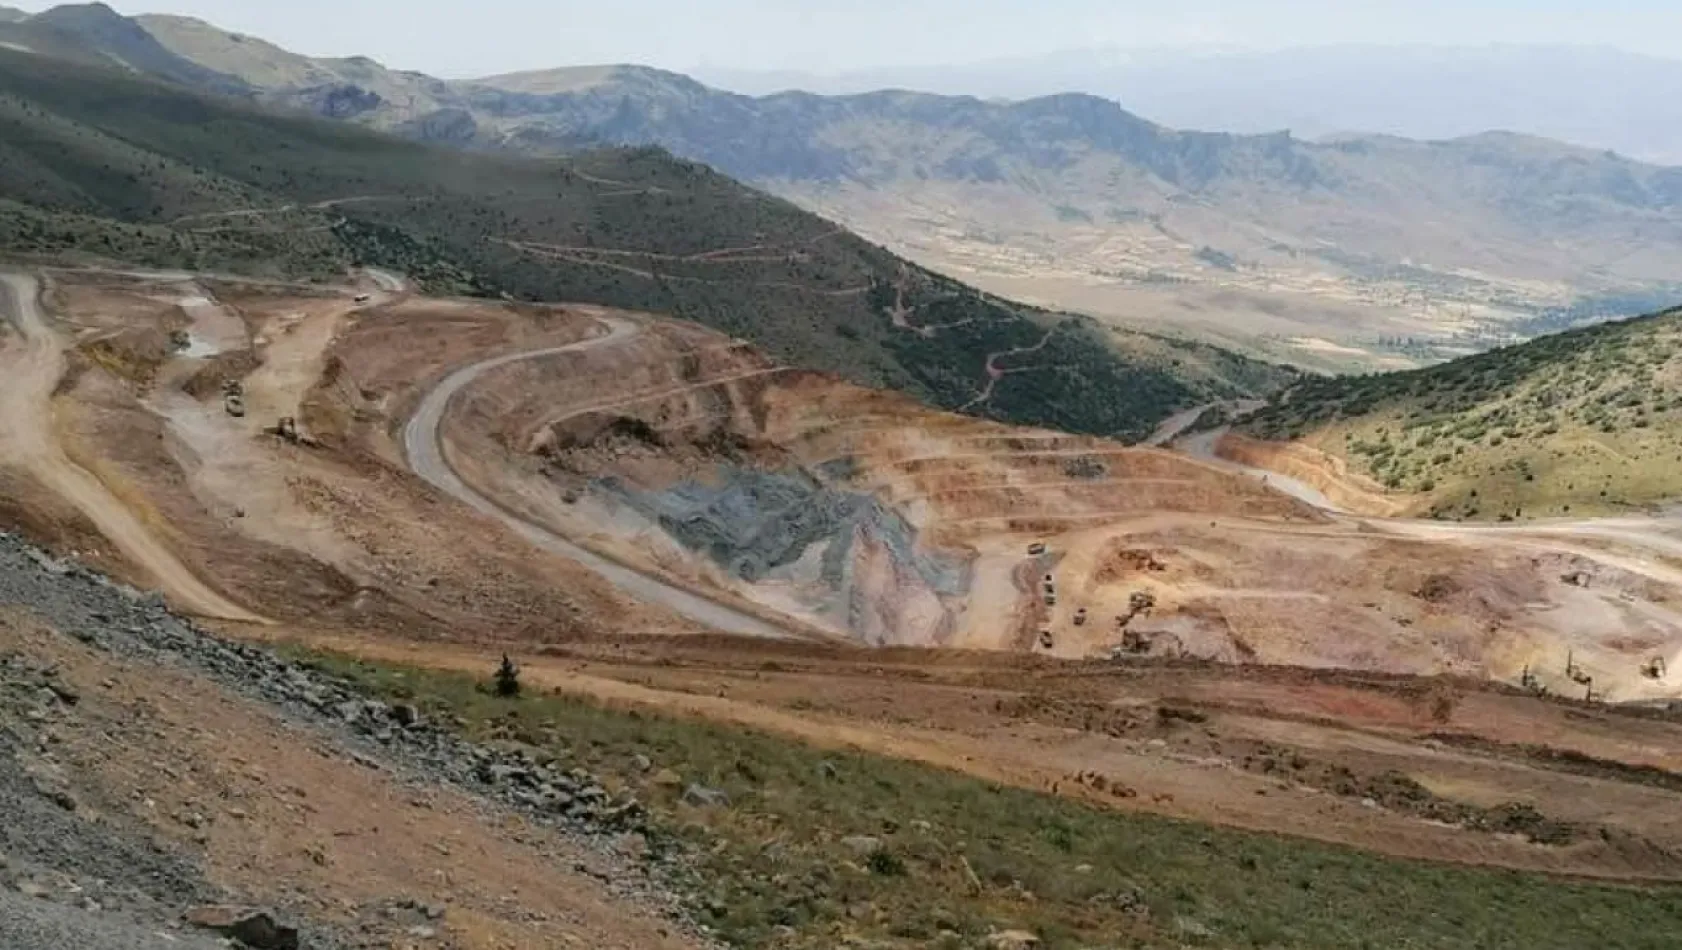 İşte Kayseri'deki maden ruhsatı sayısı! 47 maden işletmesi daha planlanıyor!